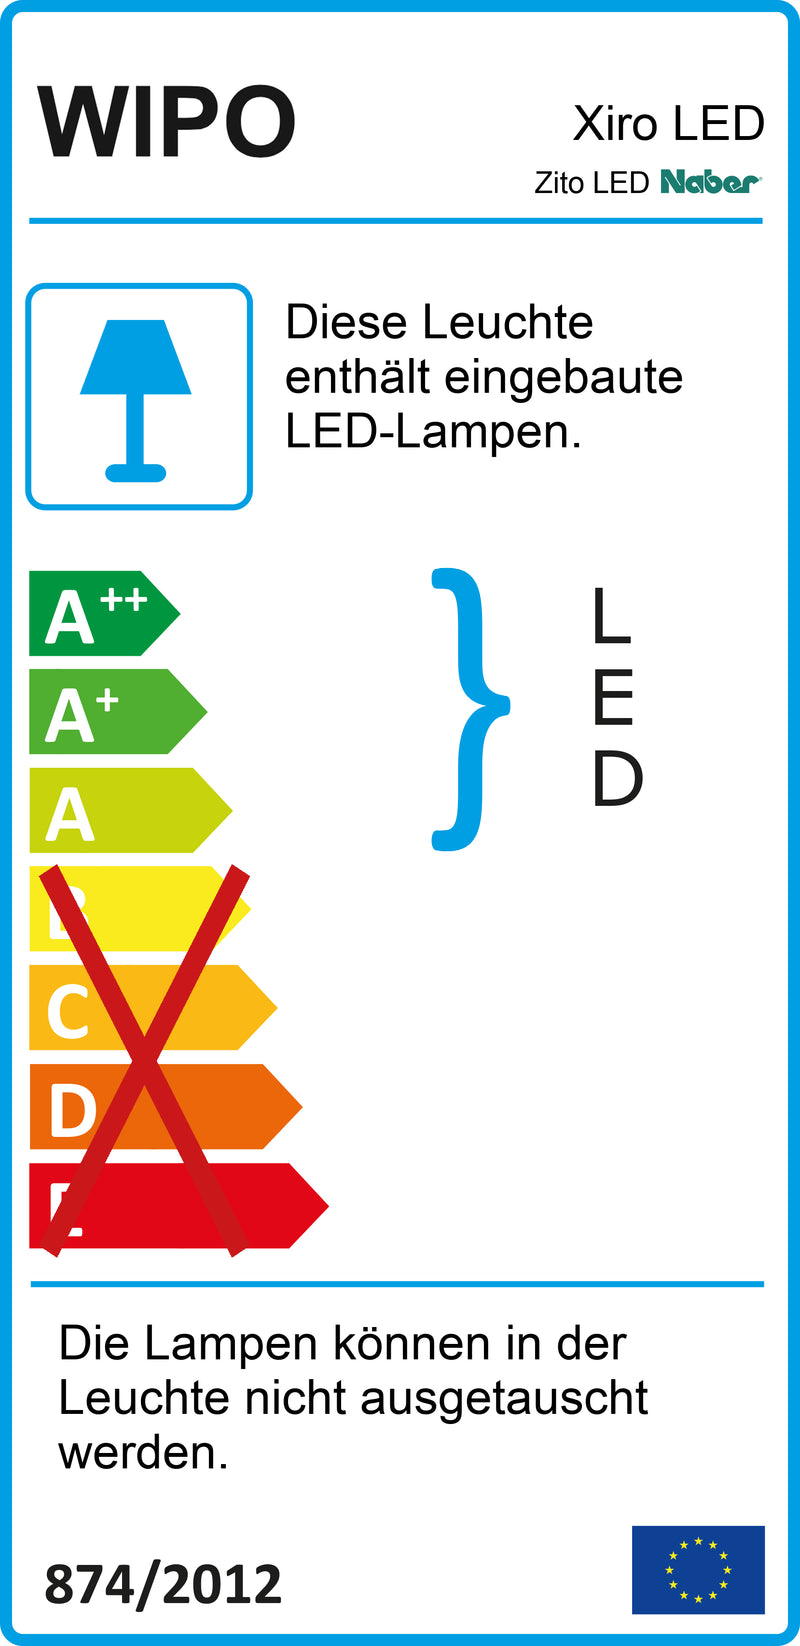 E-Label zu Zeichnung zu Zito LED als Variante L 1200 mm, 17 W, schwarz matt von Naber GmbH in der Kategorie Lichttechnik in Österreich auf conceptshop.at